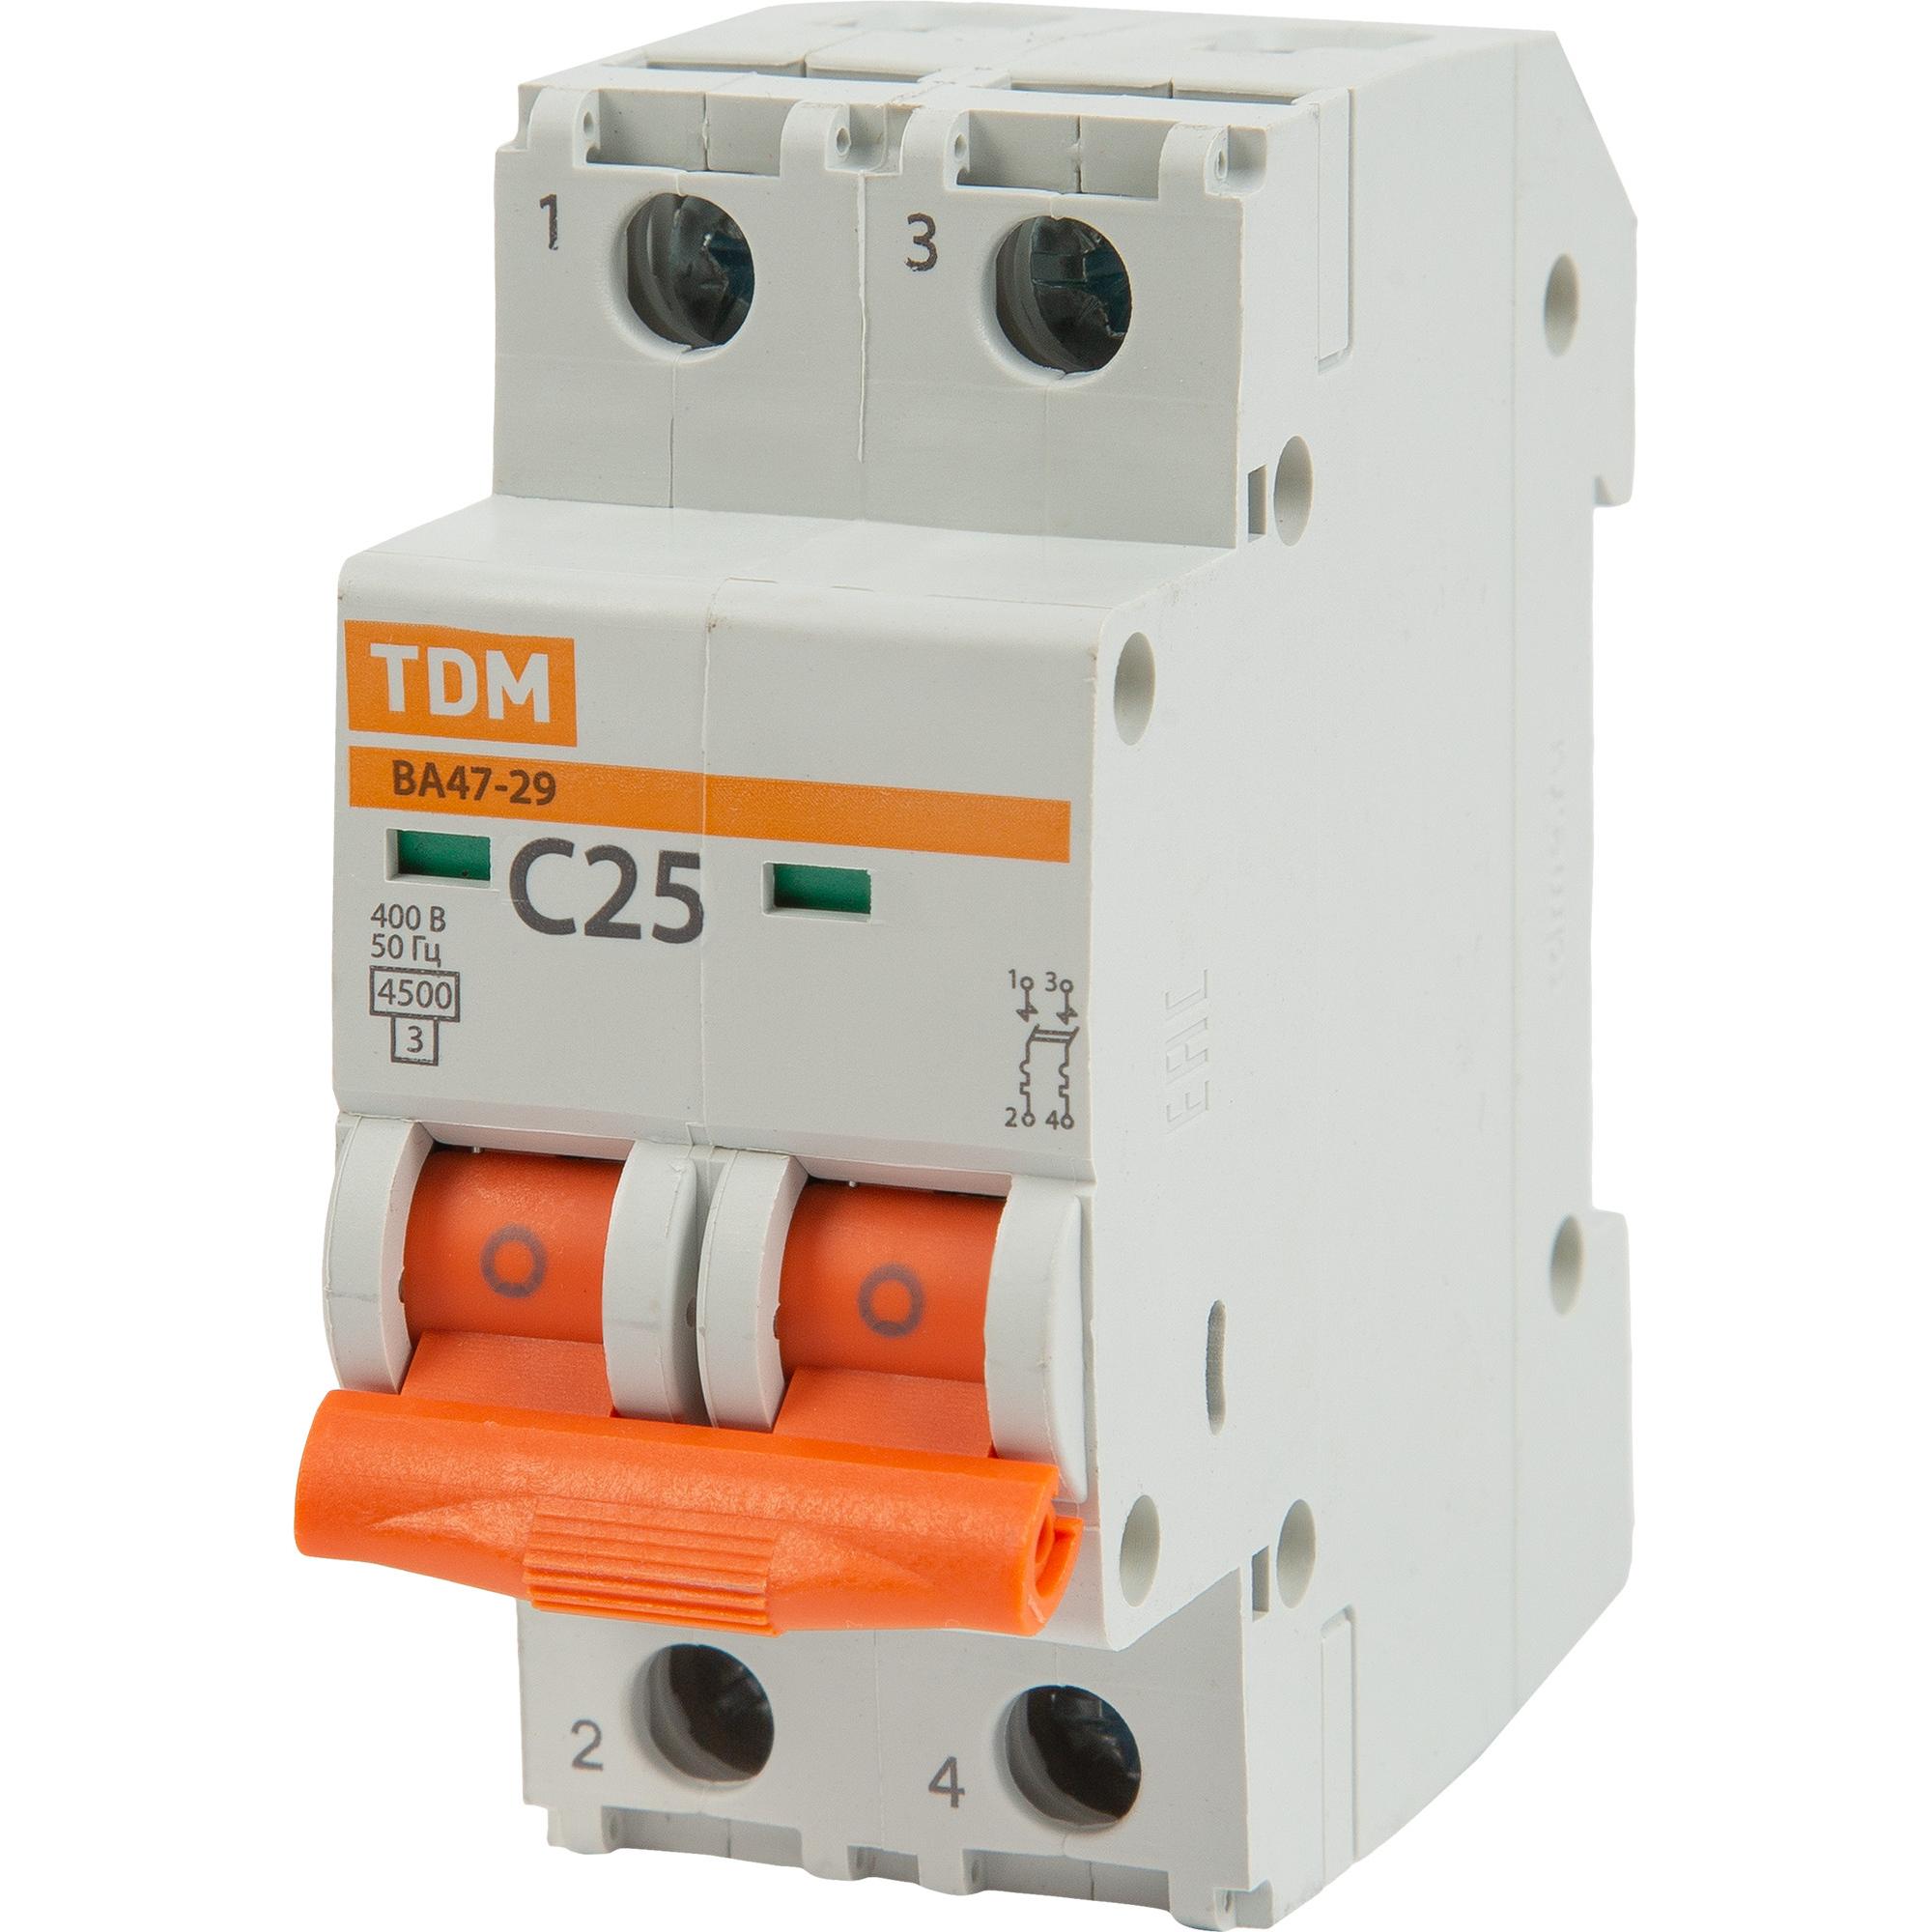 Автоматические выключатели ва47 29 3p. Автоматический выключатель TDM c25. Автомат TDM sq0206-0099. Автомат TDM sq0206-0032. Автомат TDM sq0206-0188.